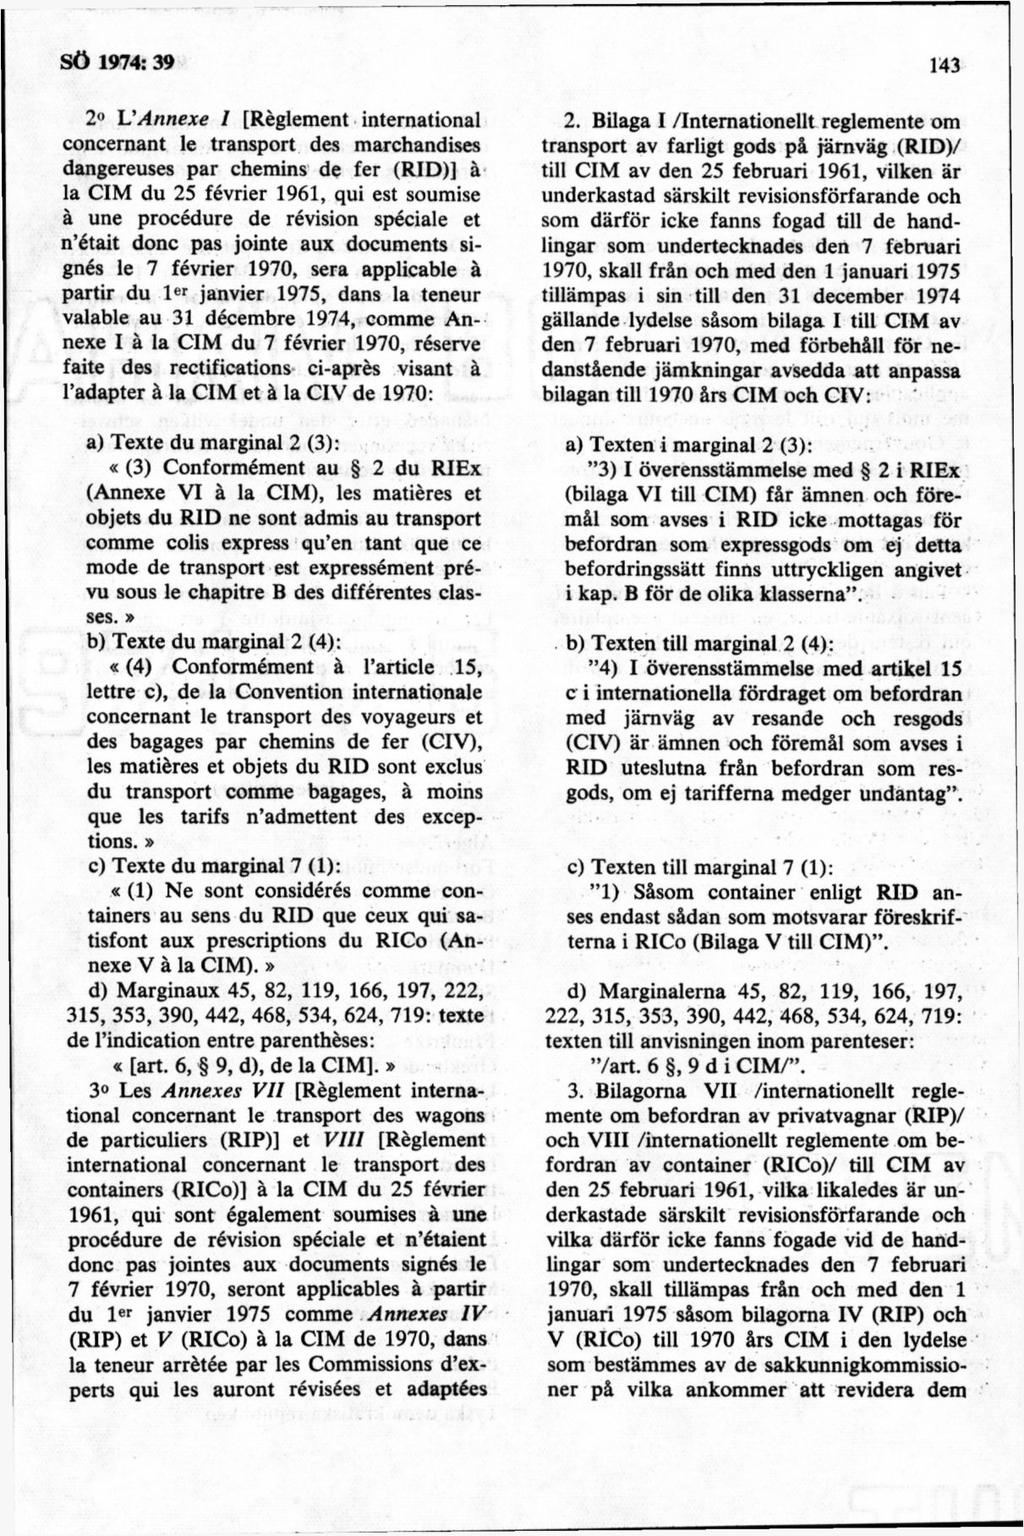 2 L'Annexe I [Réglement international concernant le transport des marchandises dangereuses par chemins de fer (RID)] å la CIM du 25 février 1961, qui est soumise å une procédure de révision spéciale